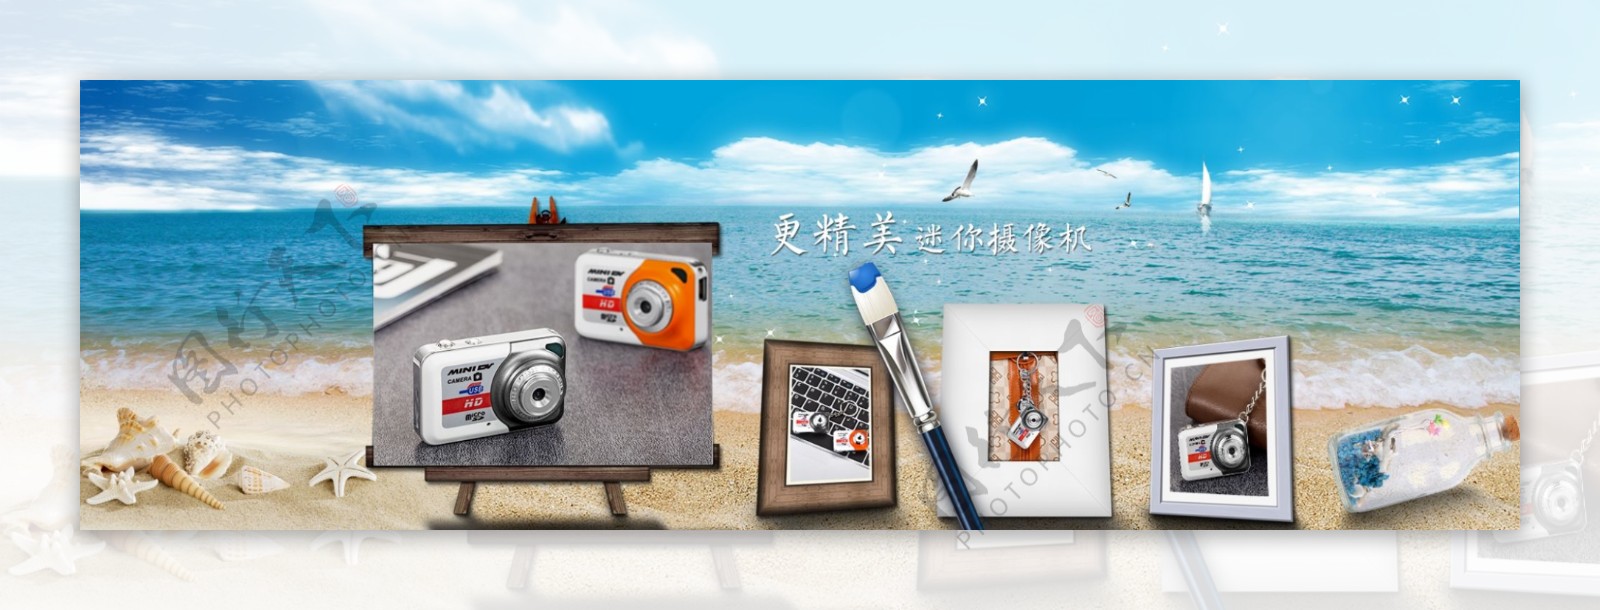 沙滩精美微型摄像机海报相框